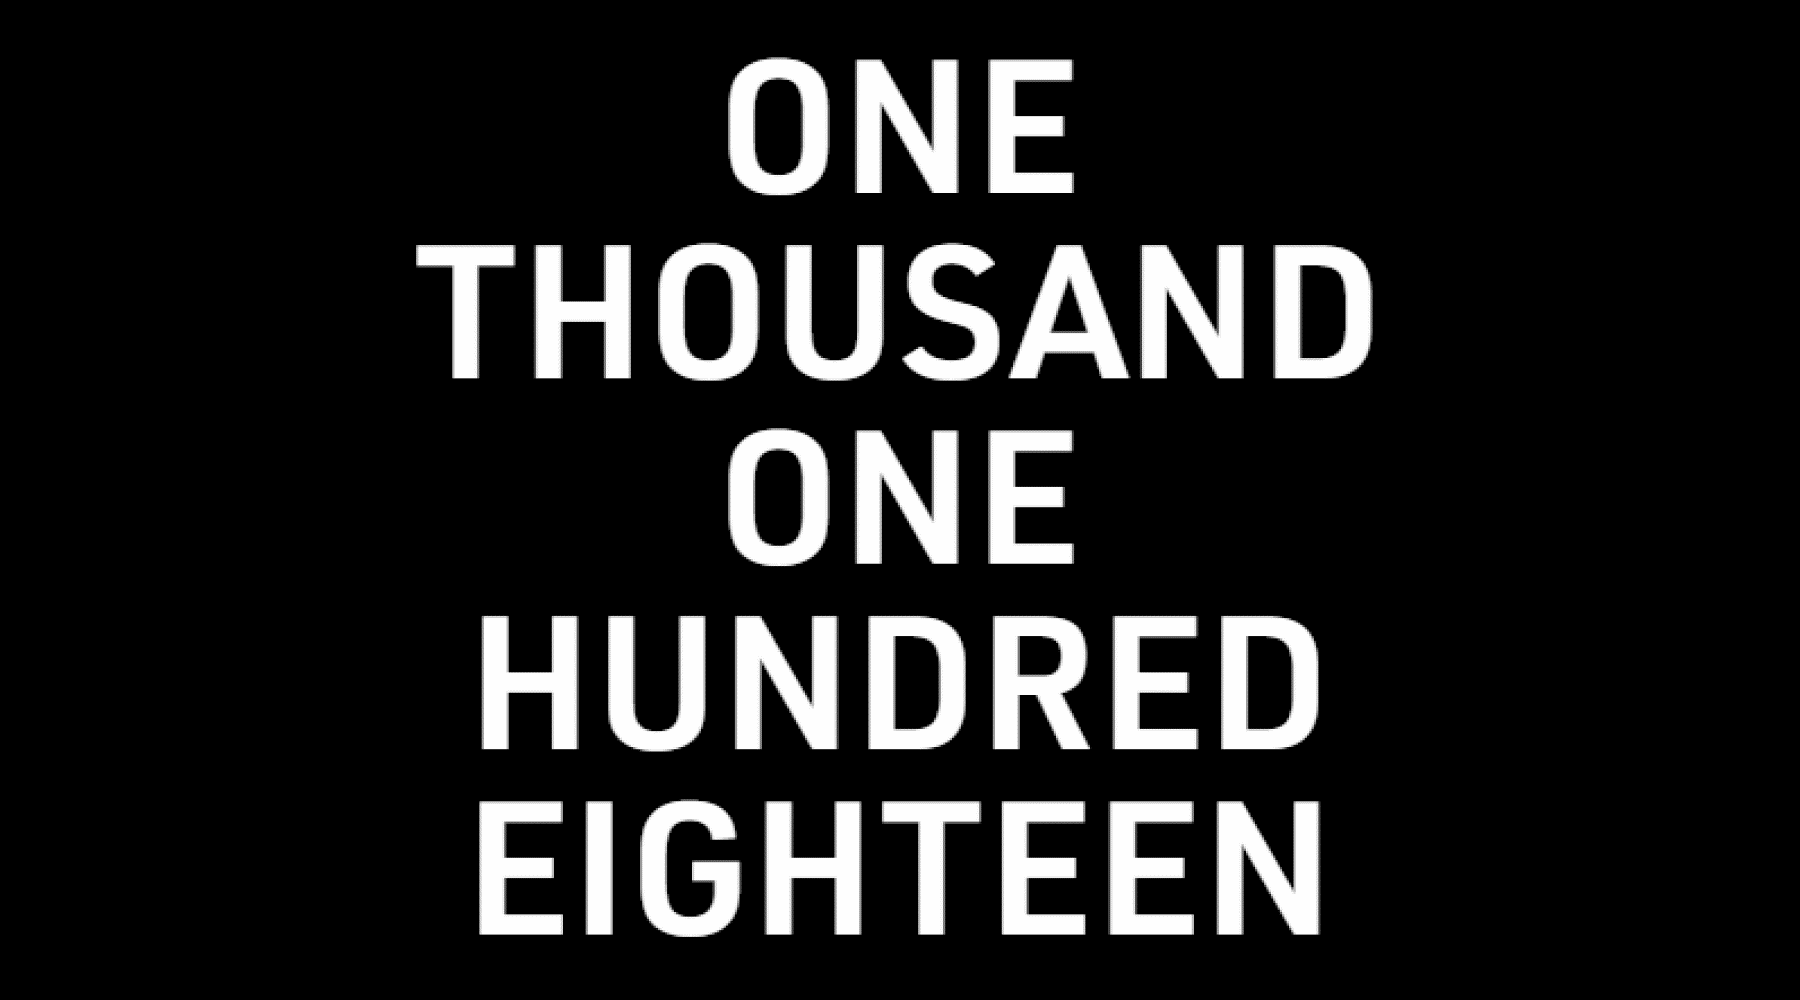 Часы" Пак х Ассанжа - черное изображение с белыми словами "ONE THOUSAND ONE HUNDRED EIGHTEEN".